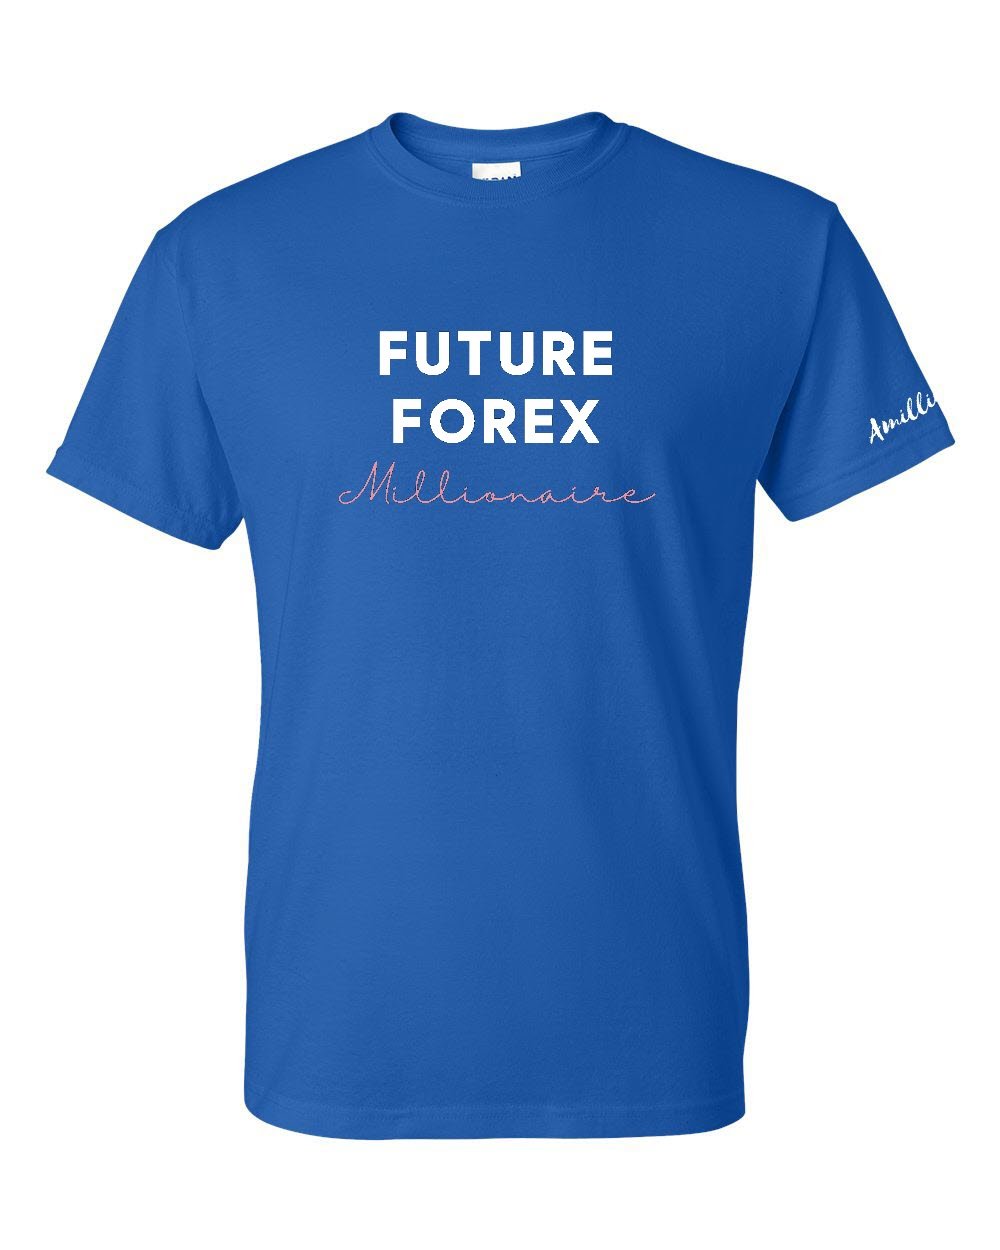 Future Forex Millionaire